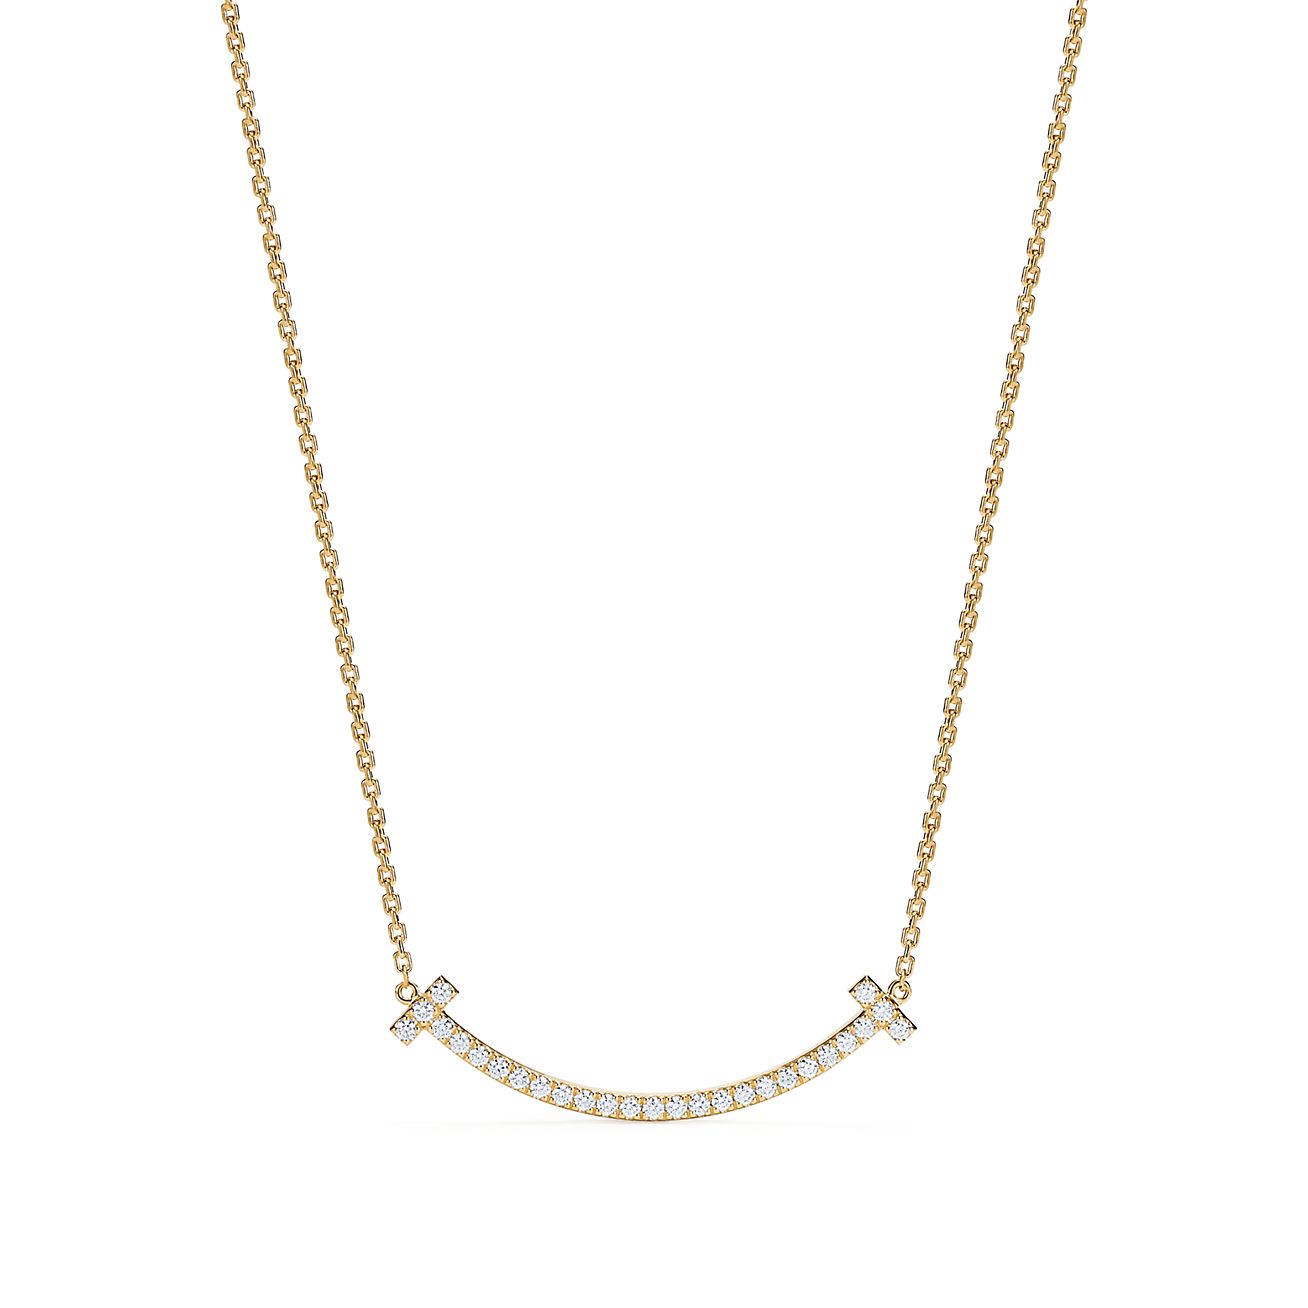 ティファニー T ミディアム スマイル ペンダント ダイヤモンド 18k ゴールド Tiffany Co